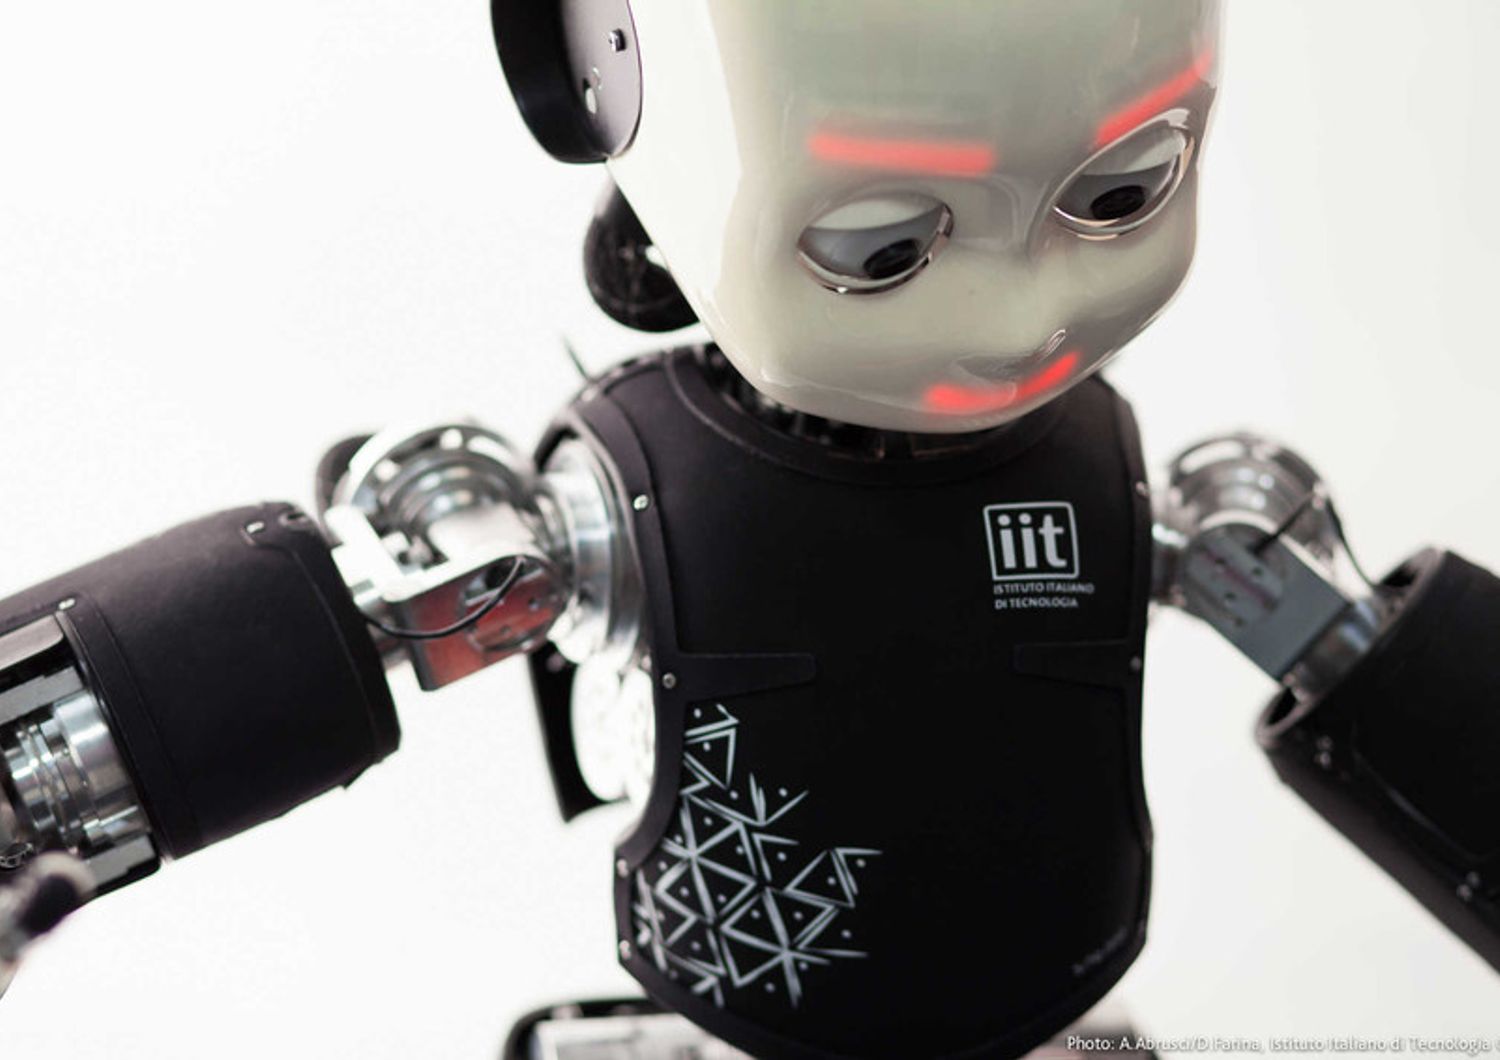 Nella robotica, che &egrave; l'attivit&agrave; pi&ugrave; tradizionale sono state realizzate diverse piattaforme umanoidi, animaloidi e plantoidi fra cui iCub, il 'cucciolo di robot' per lo studio cognitivo.